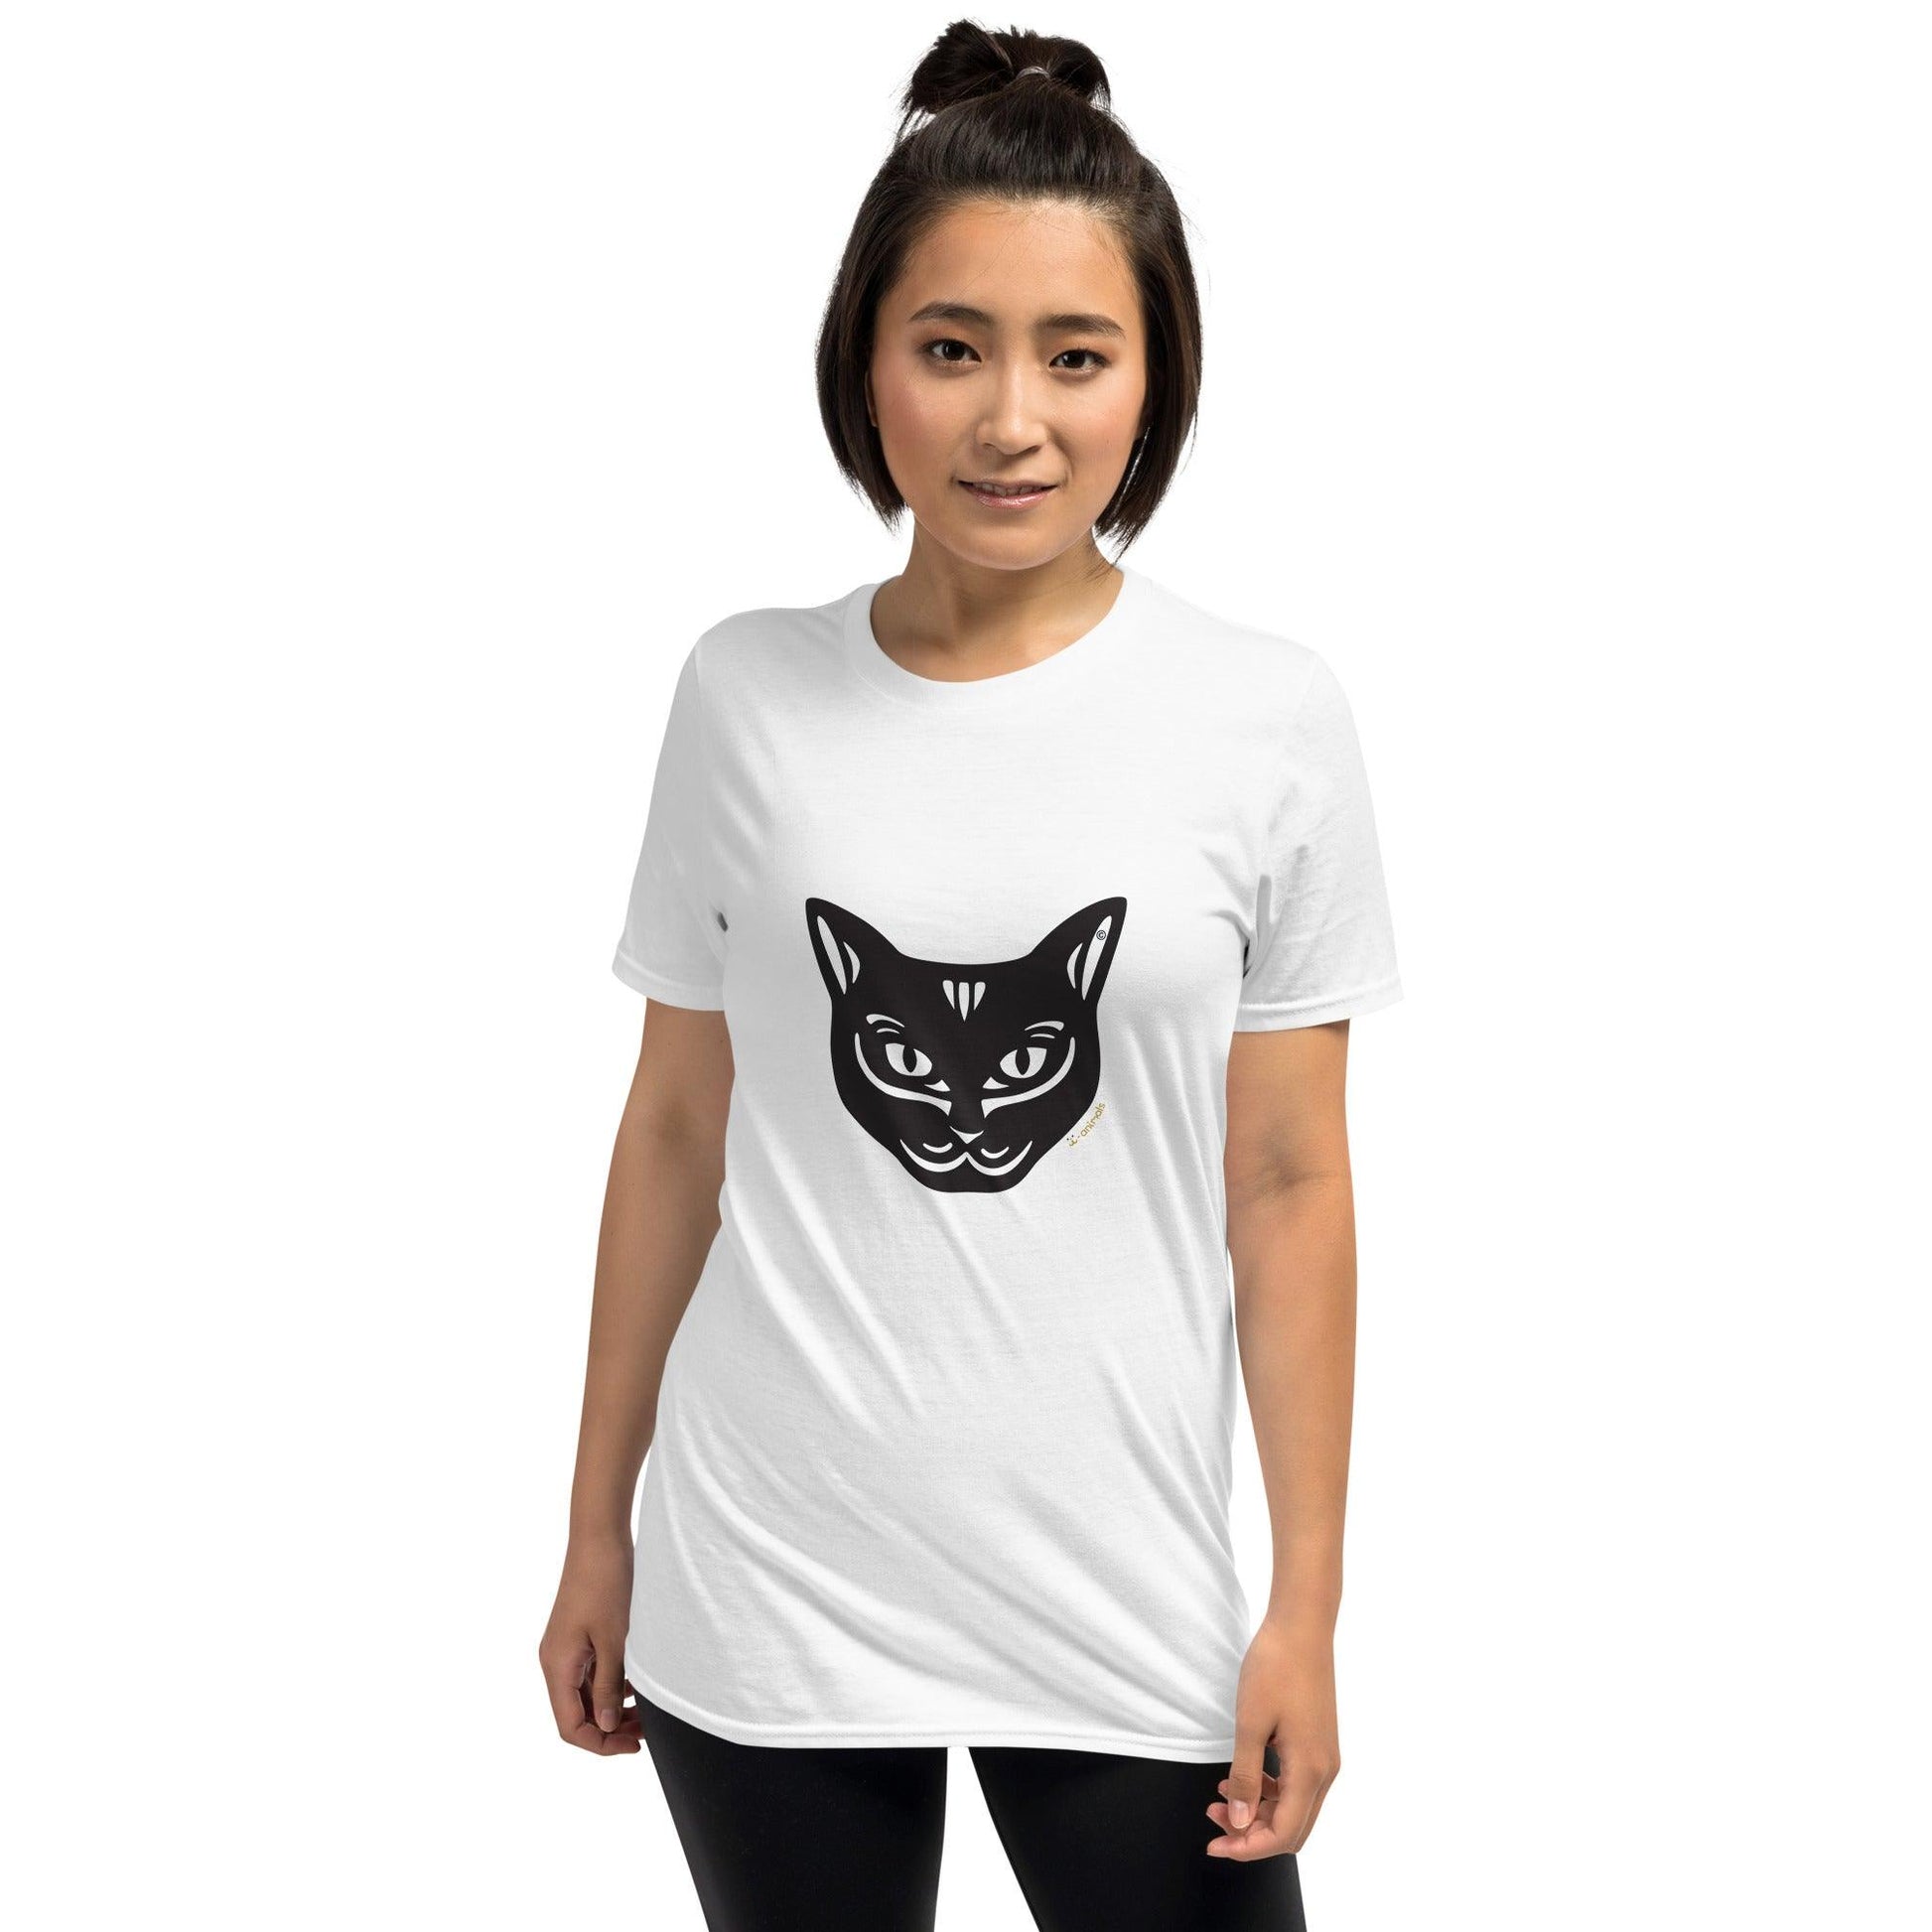 Camiseta unissex de manga curta - Gato Preto - Tribal - Cores Claras i-animals